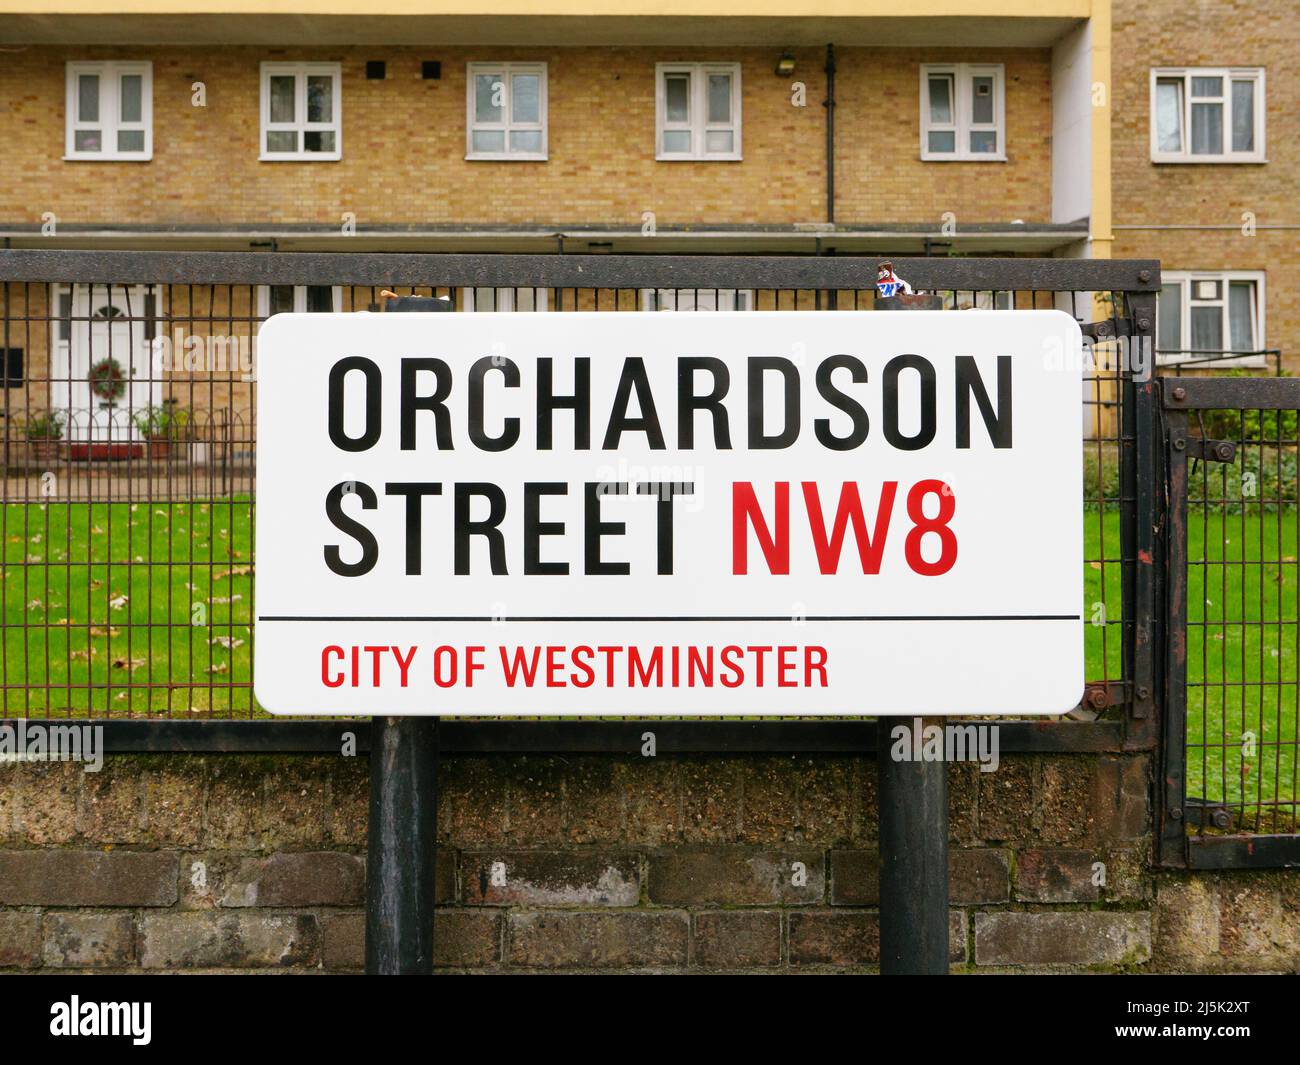 Londres, UK-21.12.21: Cartel de nombre de la calle Orchardson, Ciudad de Westminster, Londres, Reino Unido Foto de stock